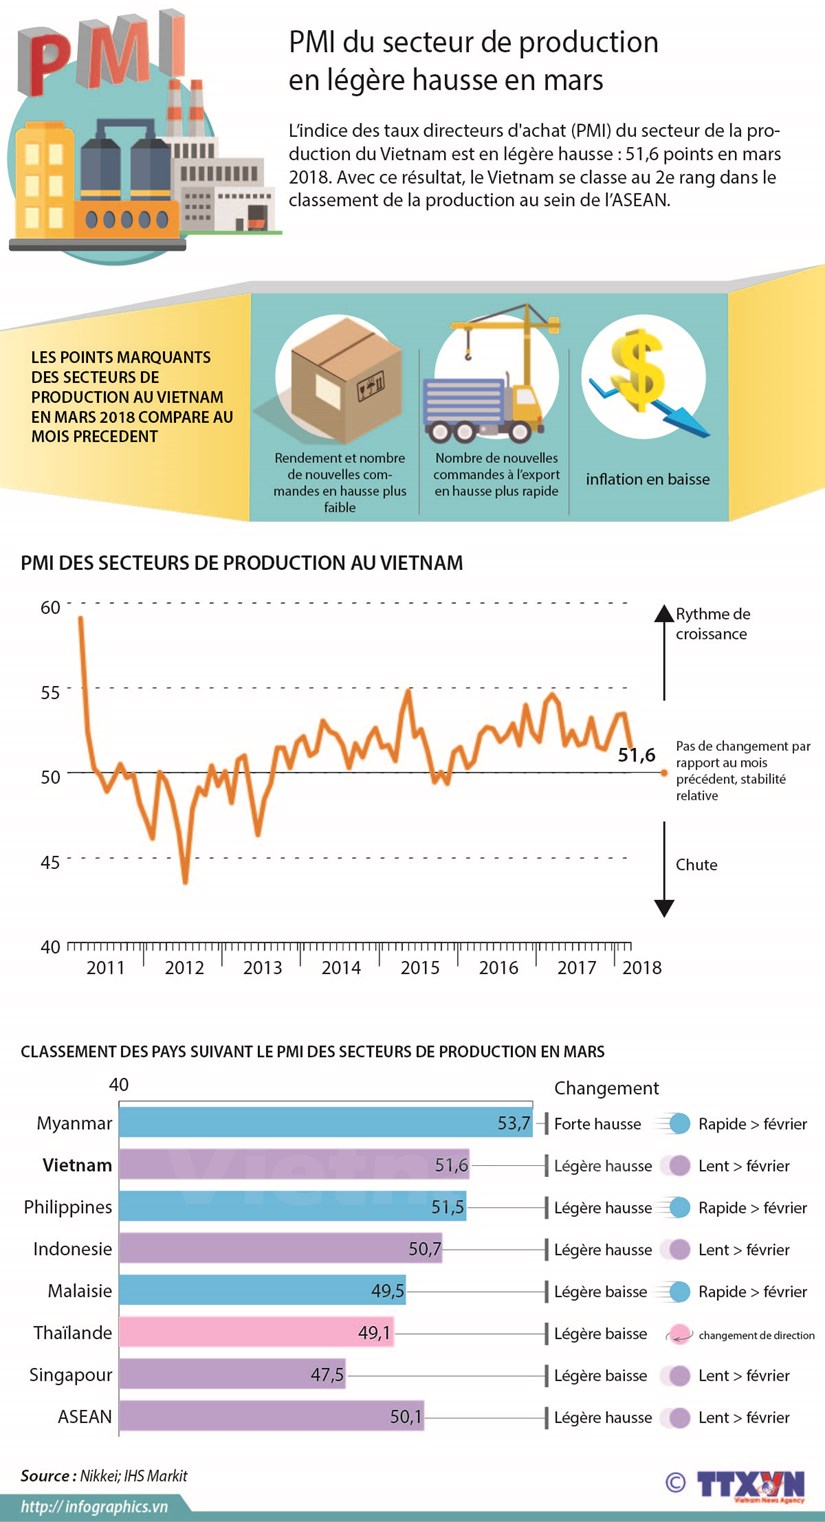 PMI du secteur de production en legere hausse en mars hinh anh 1